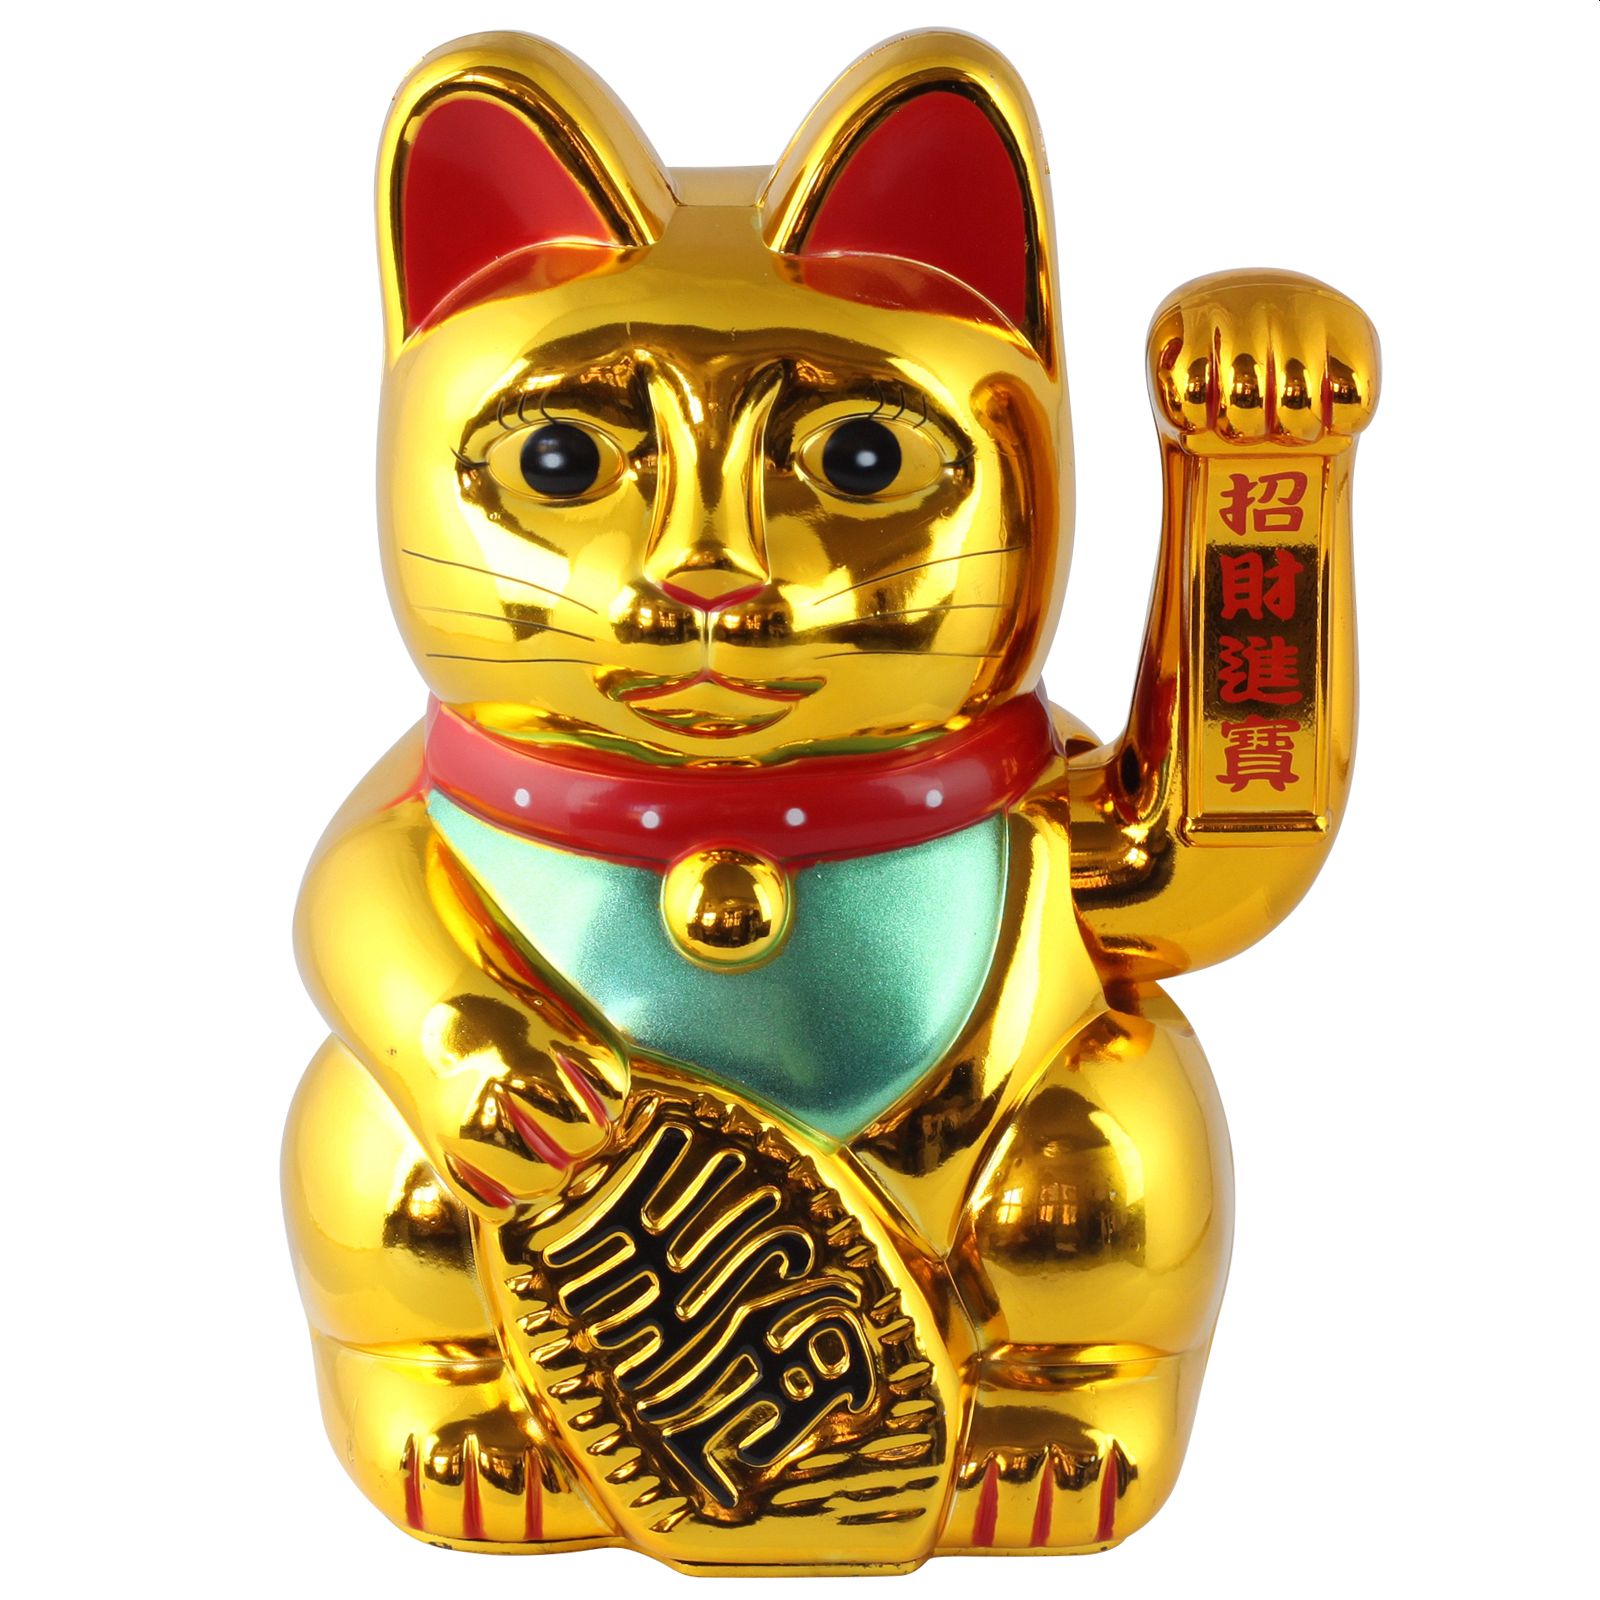 Big Winkekatze Glückskatze Maneki Neko Katze Lucky Cat Gold 20 cm Glücksbringer